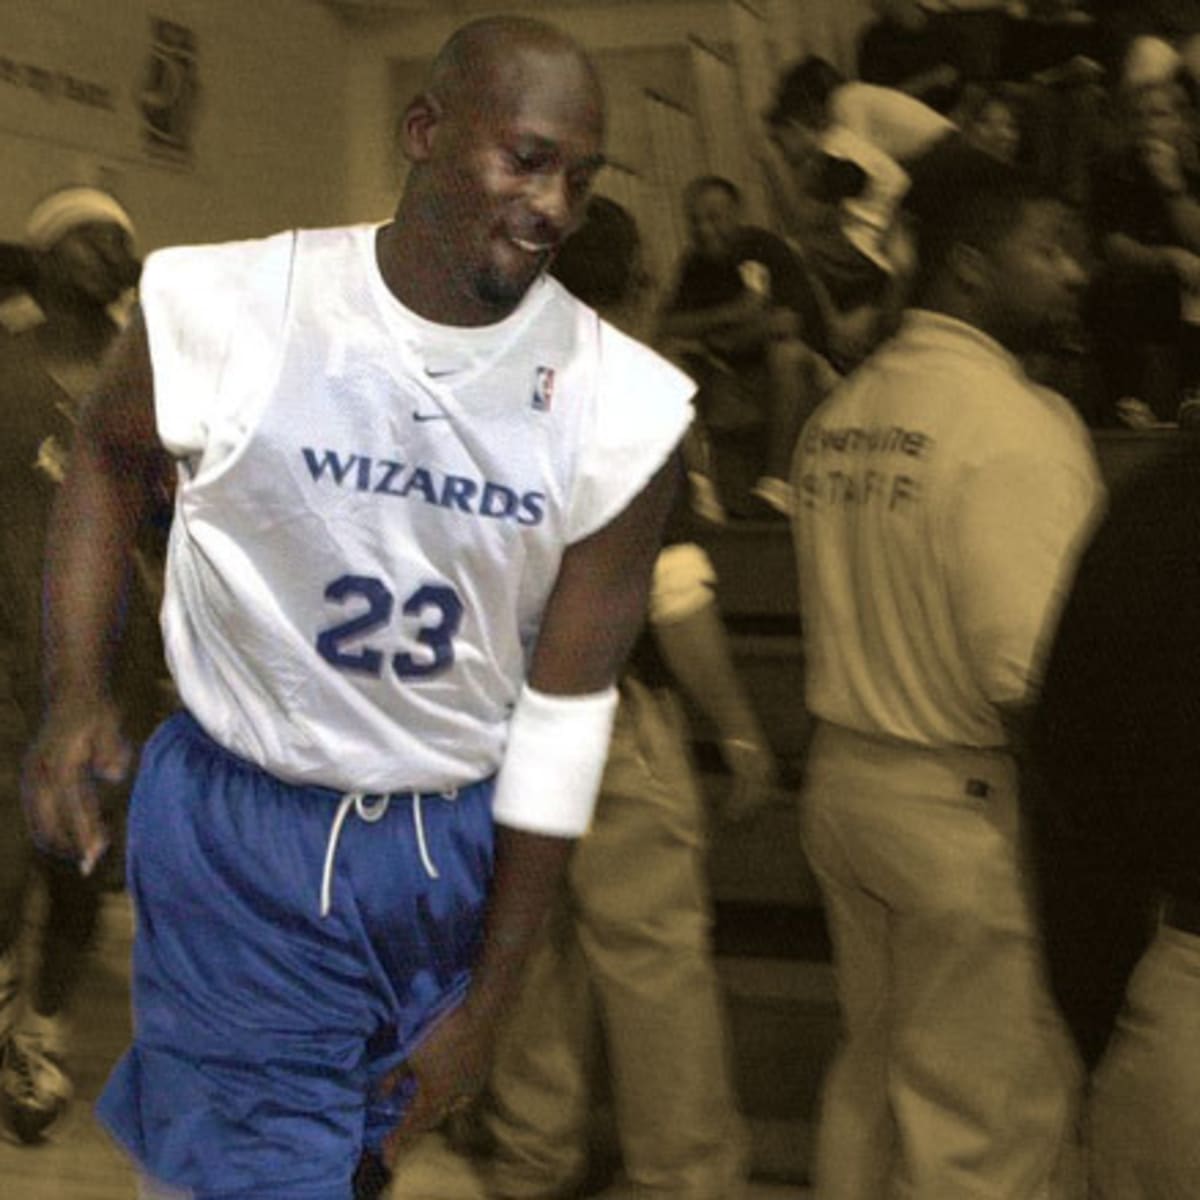 Happy birthday, Michael Jordan! - Washington Wizards